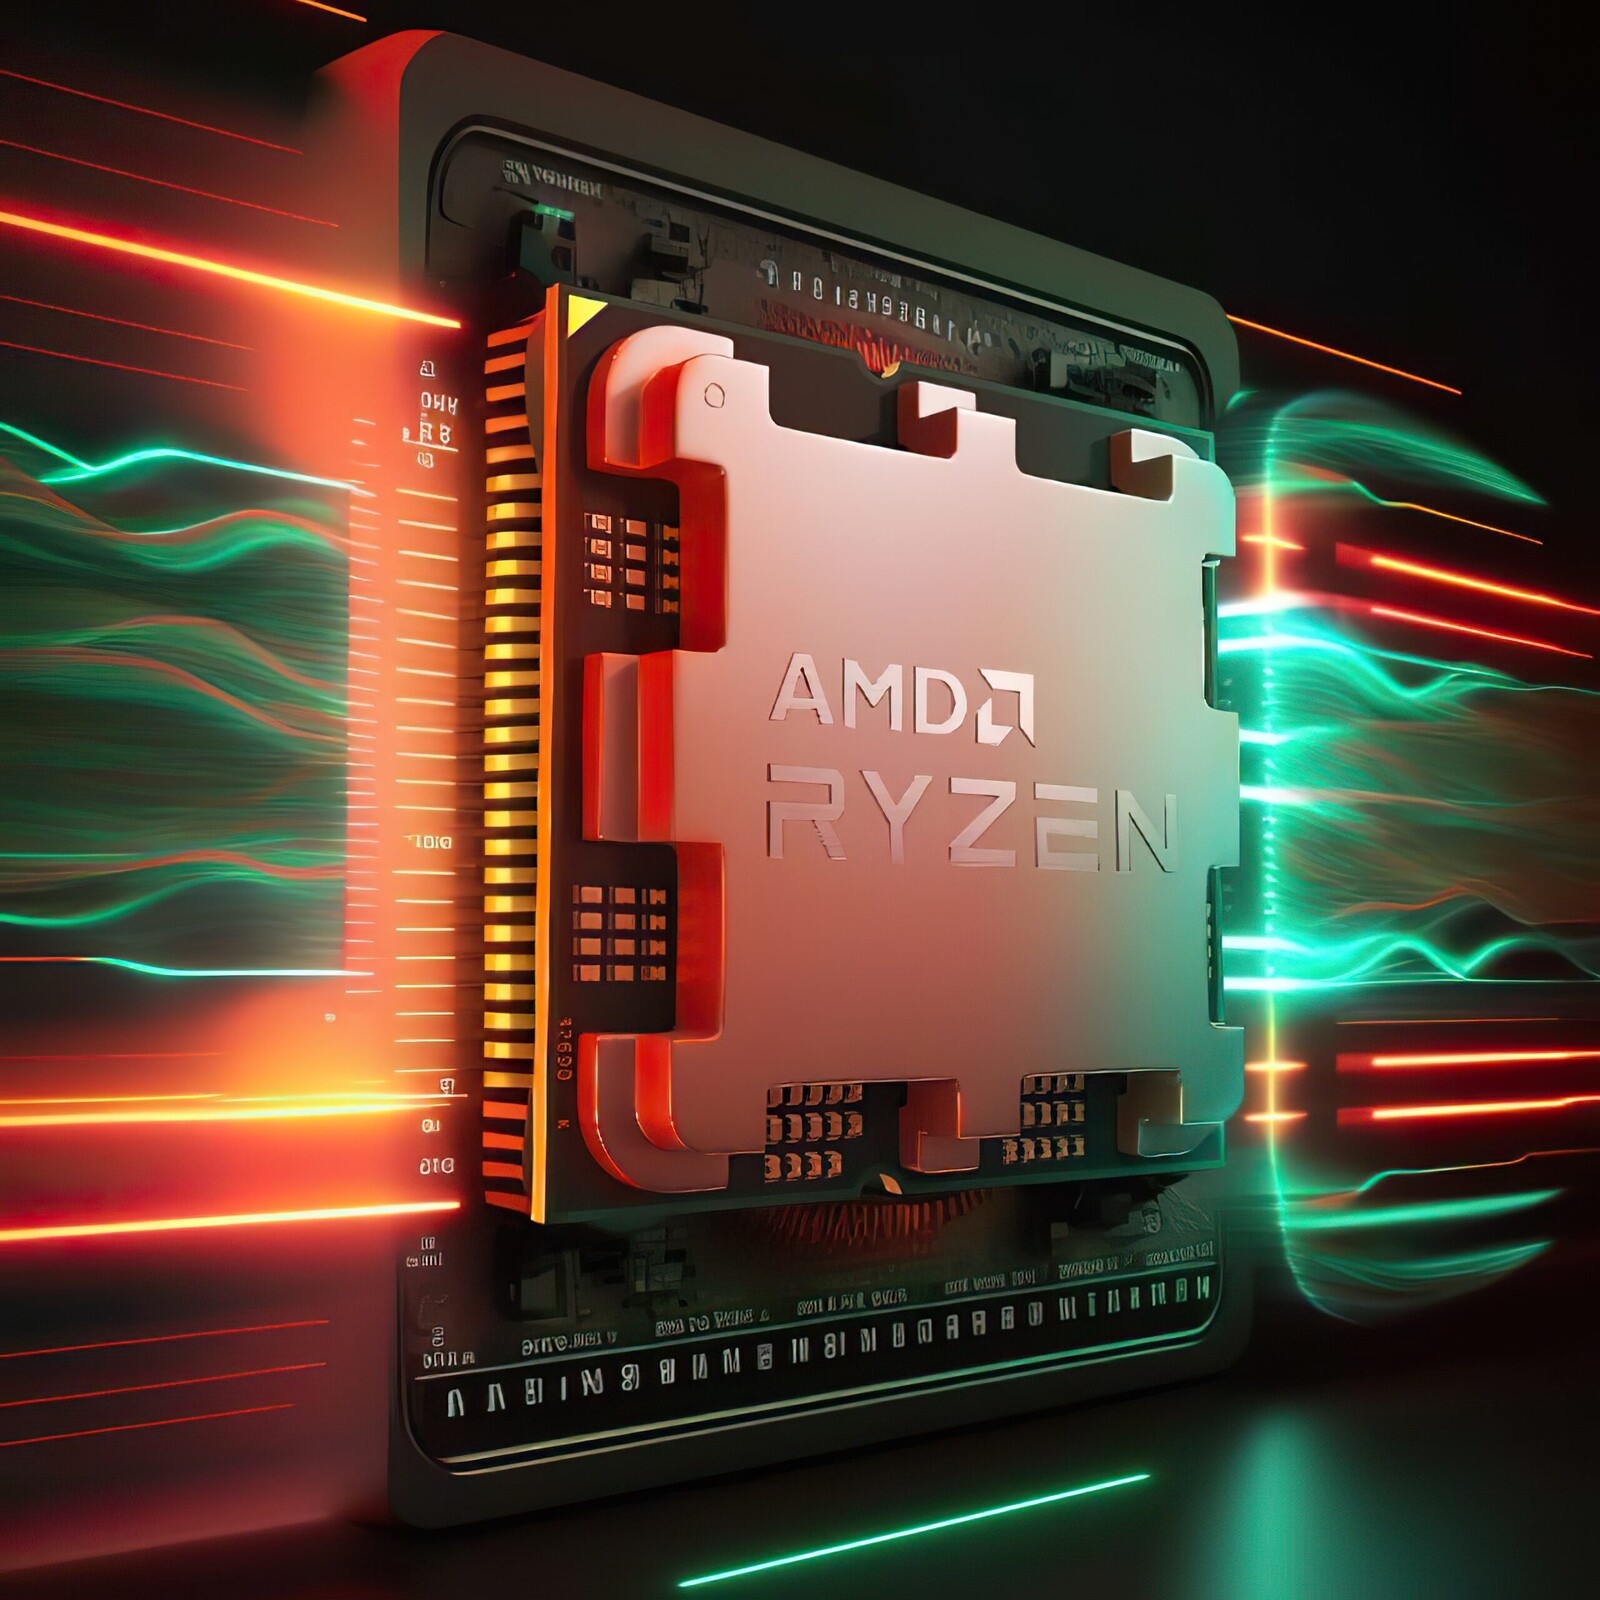 Zen5加持 AMD锐龙8000桌面APU曝光：集显狂虐入门卡